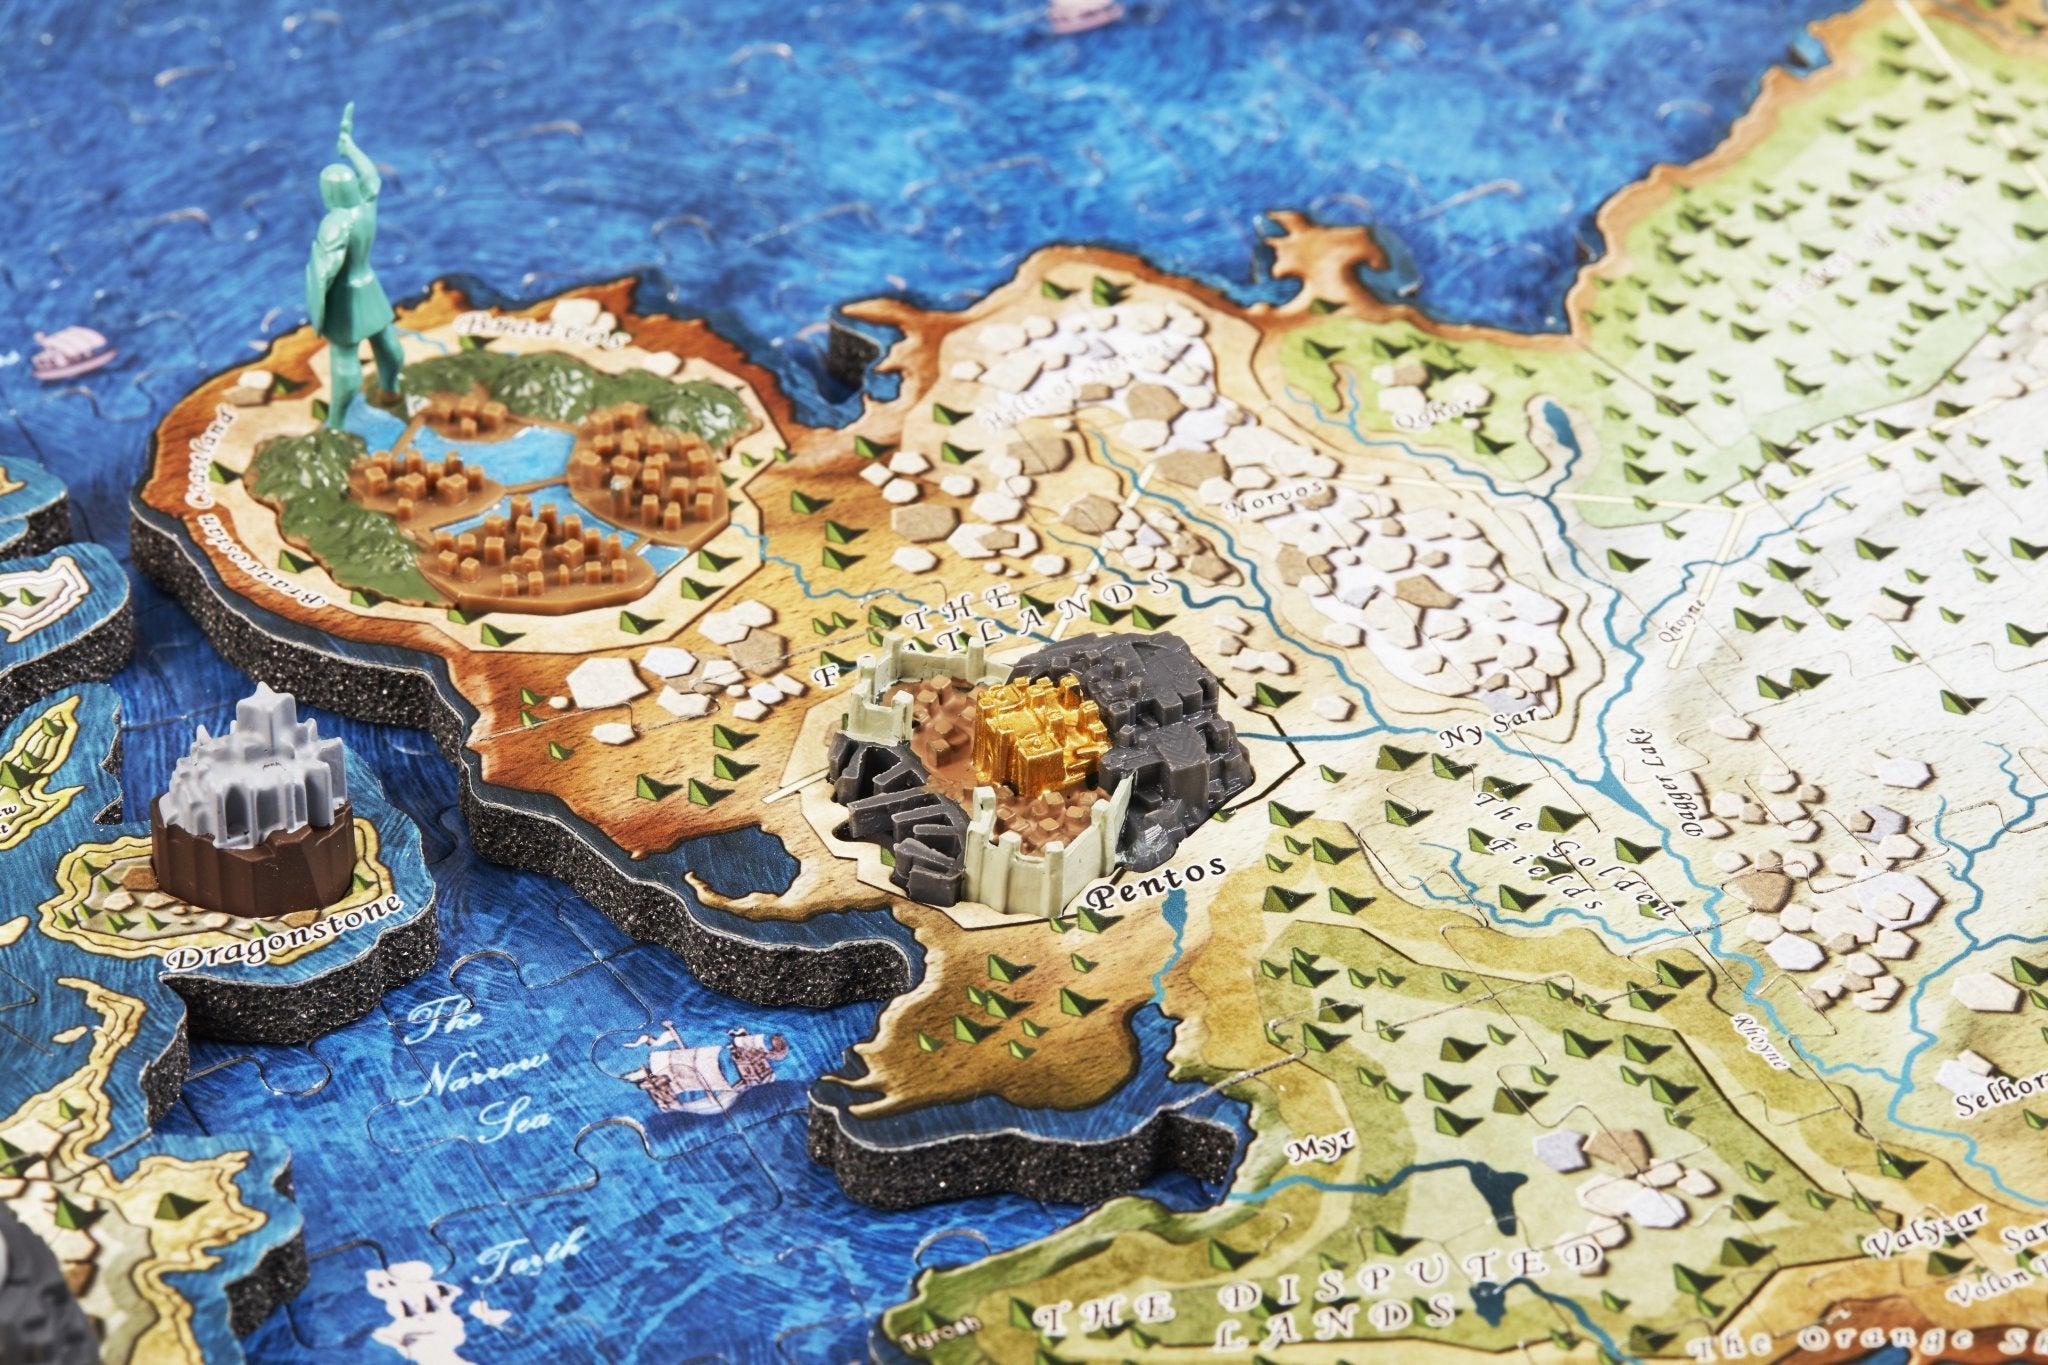 4D Game of Thrones Westeros & Essos Puzzle - 4DPuzz - 4DPuzz
